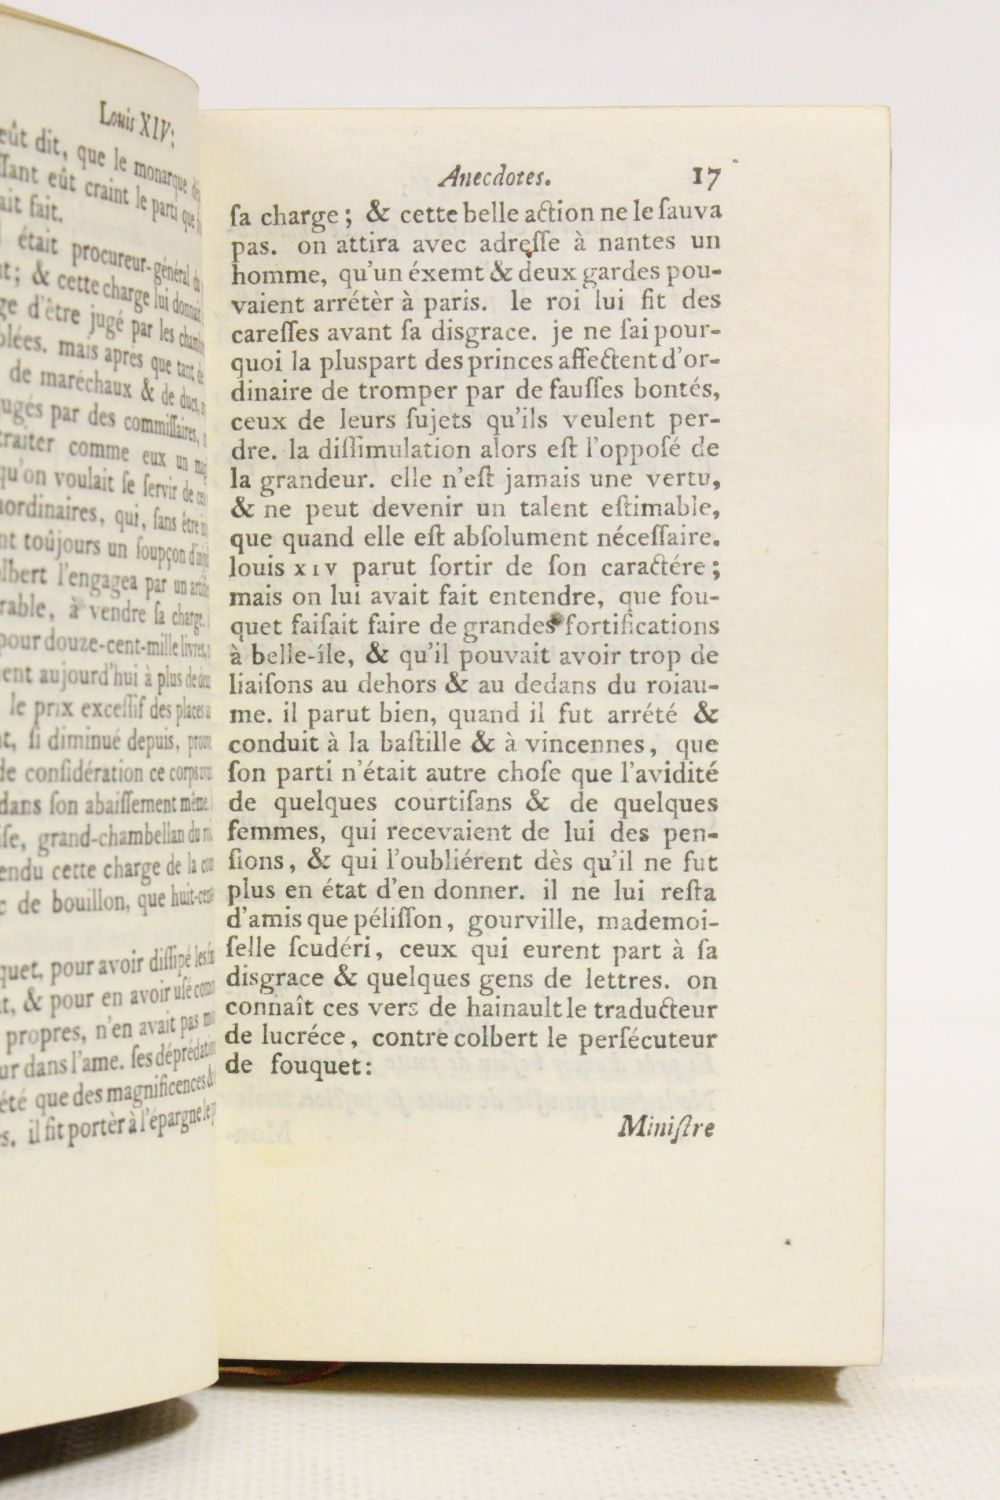  Le siècle de Louis XIV: Voltaire: Books